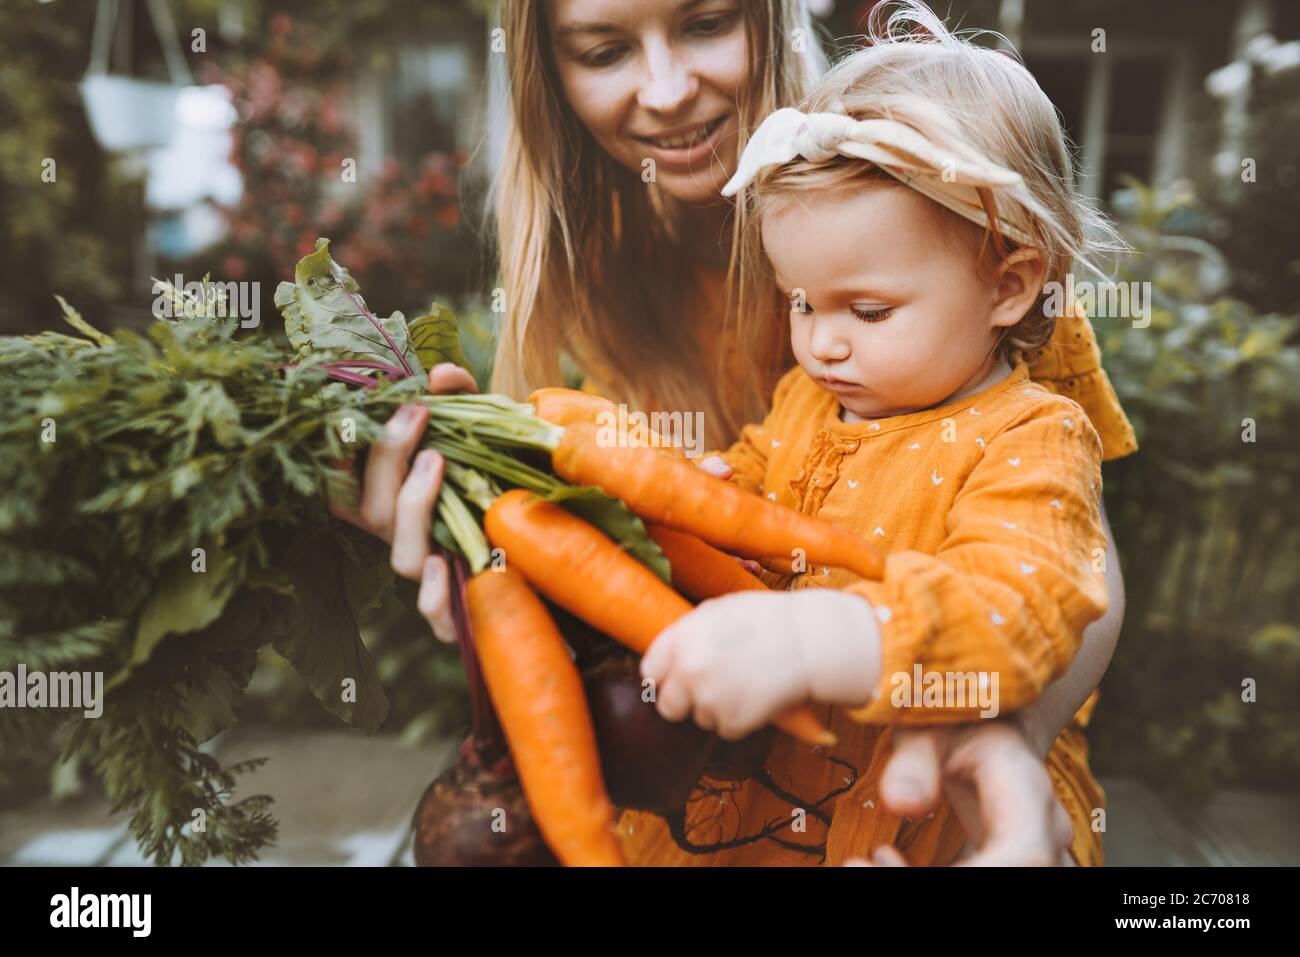 Mutter und Kind Tochter mit Bio-Gemüse gesunde Ernährung Familie Lifestyle hausgemachte Rüben und Karotten lokalen Landwirtschaft Garten vegane Ernährung Konz Stockfoto